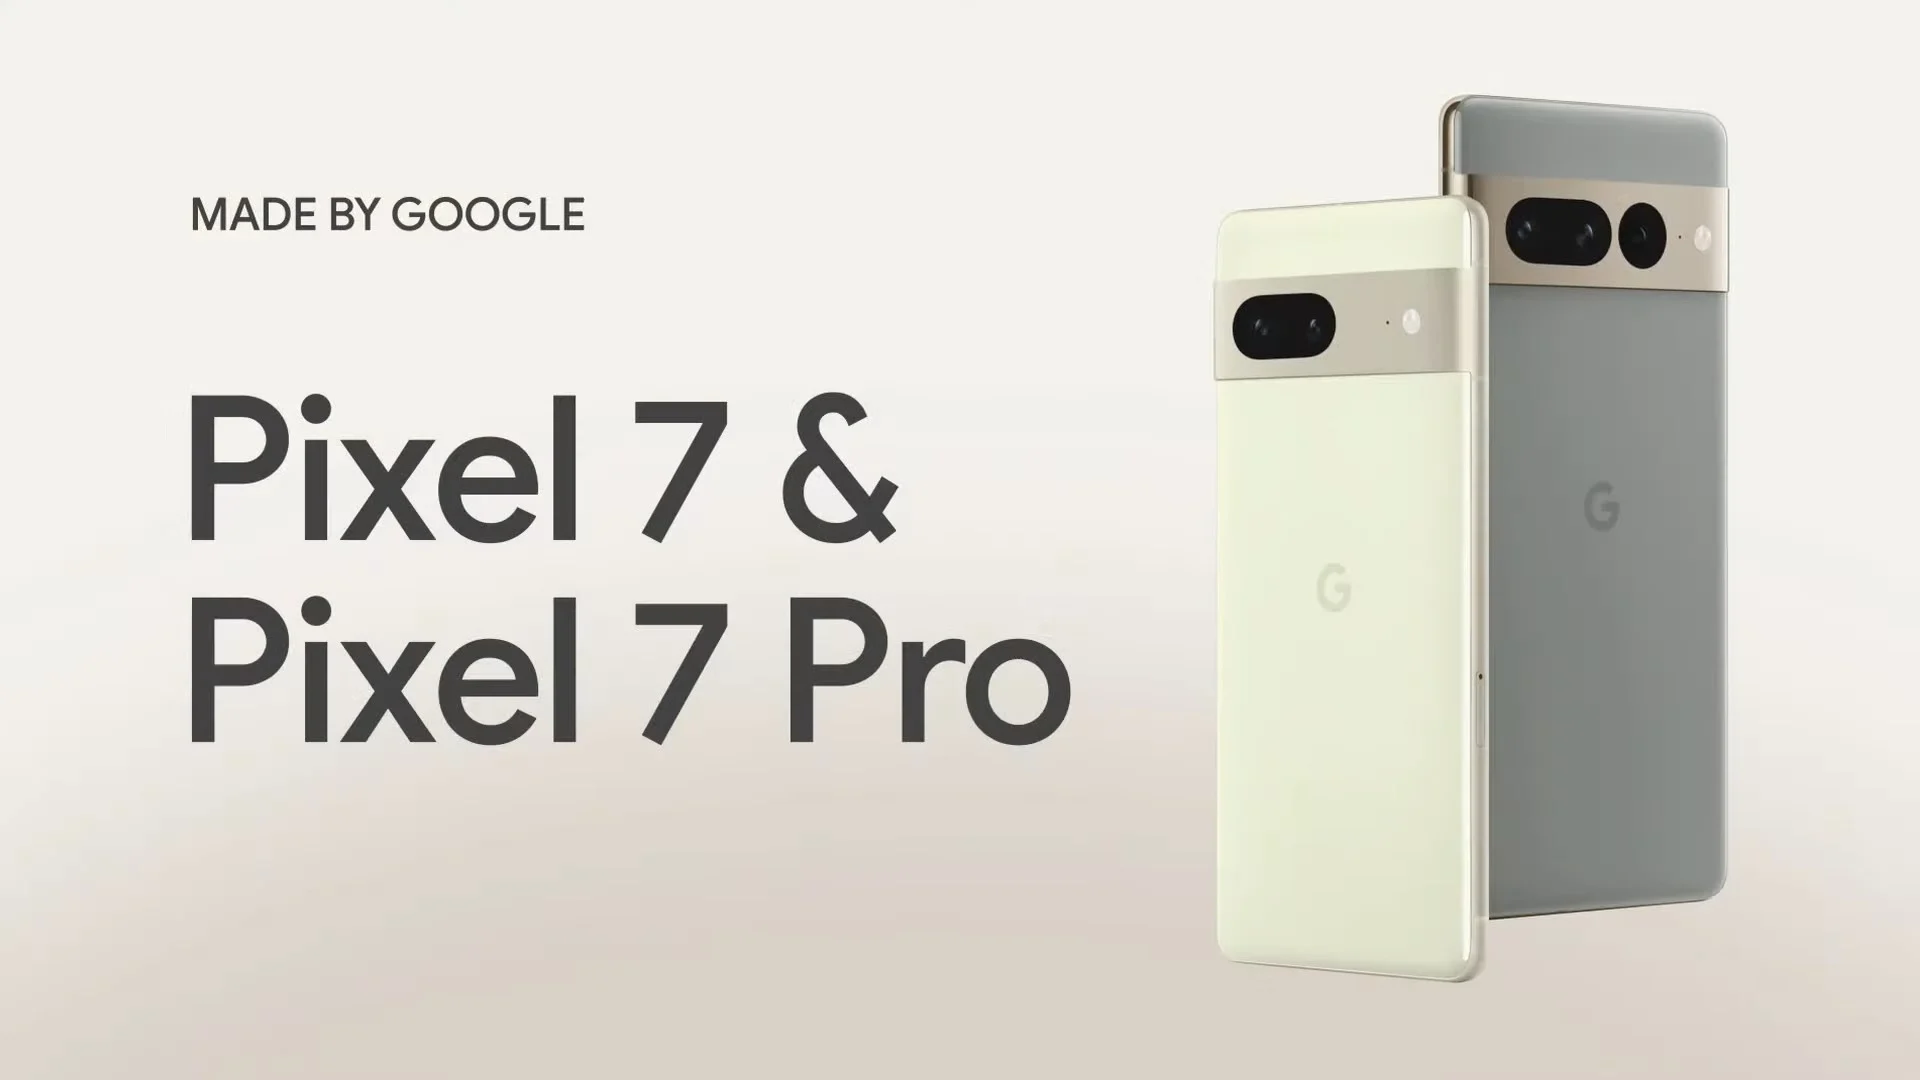 USA, Wielka Brytania, Kanada, Niemcy, Hiszpania i 12 innych krajów, w których można oficjalnie kupić Google Pixel 7 i Pixel 7 Pro